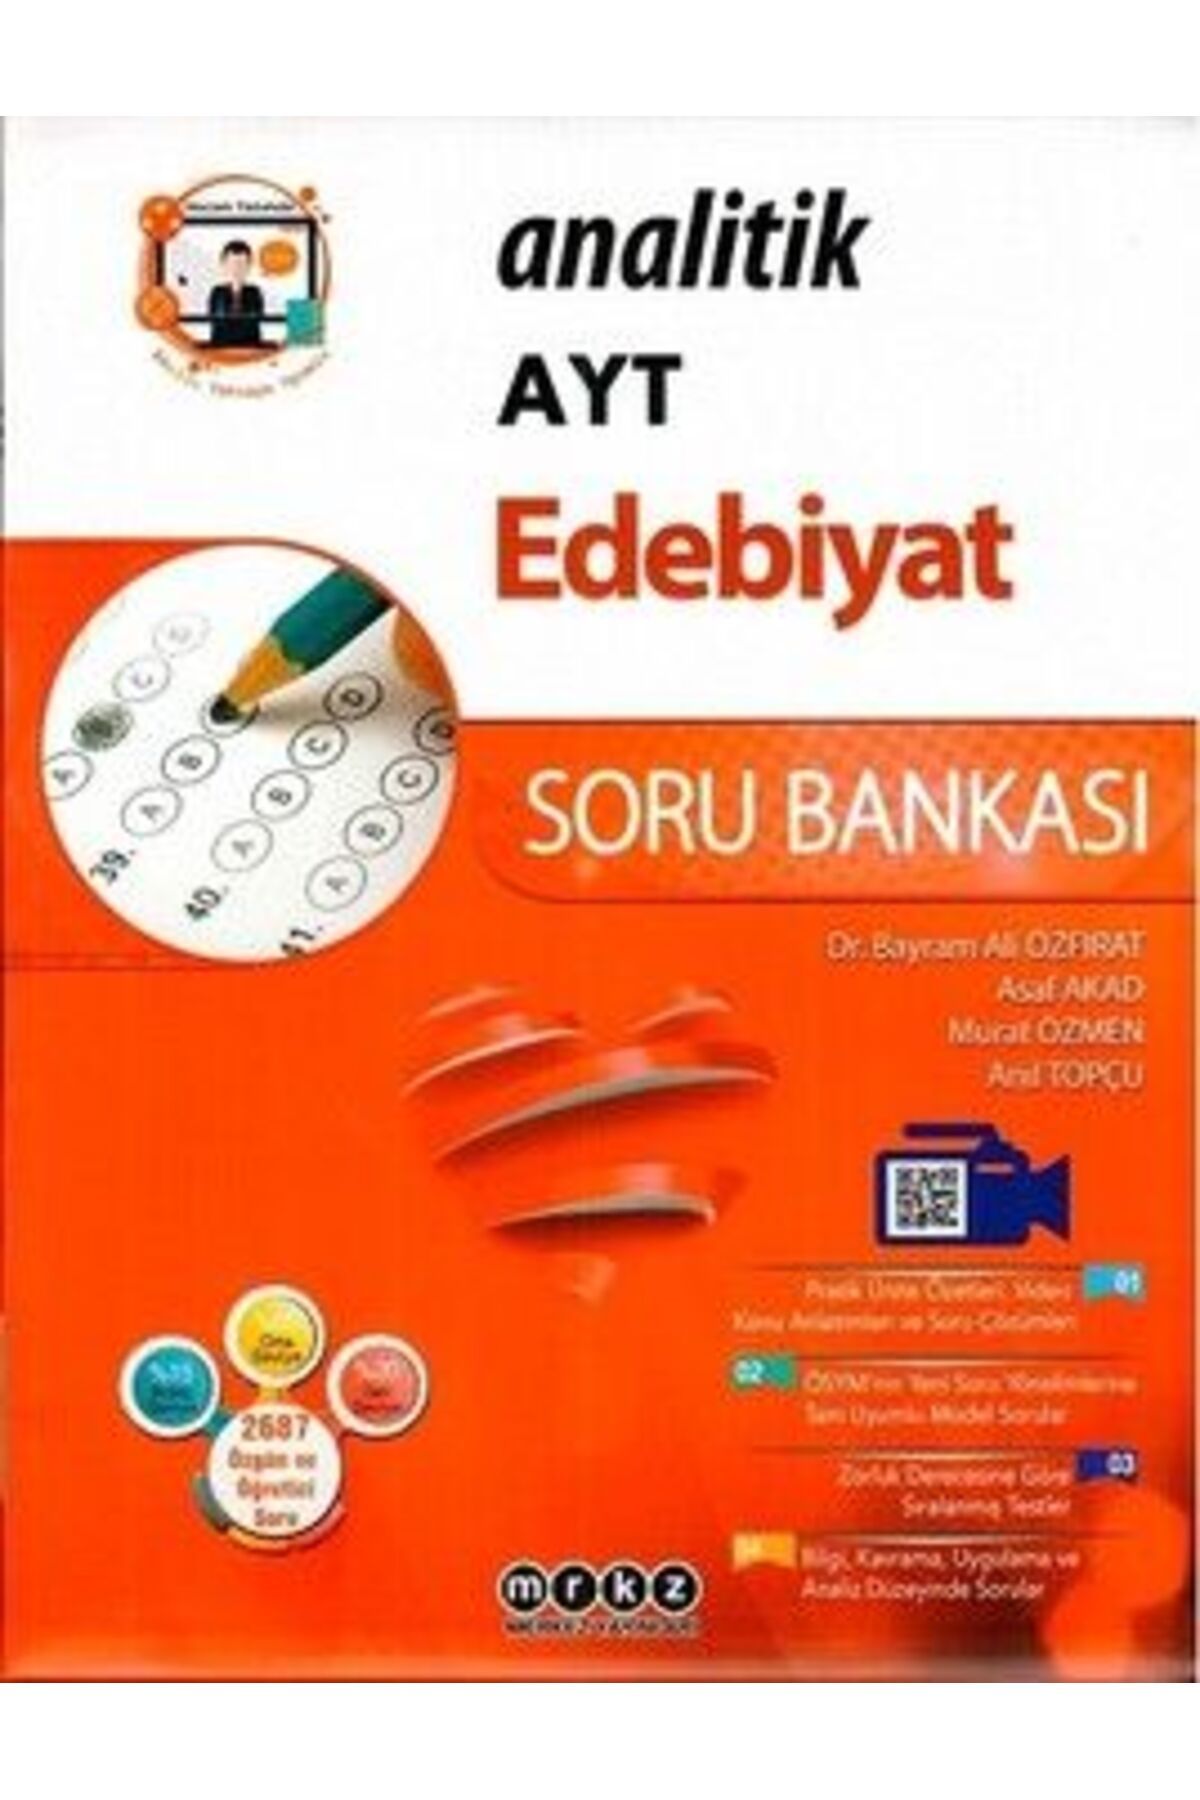 Merkez Yayınları Ayt Edebiyat Analitik Soru Bankası